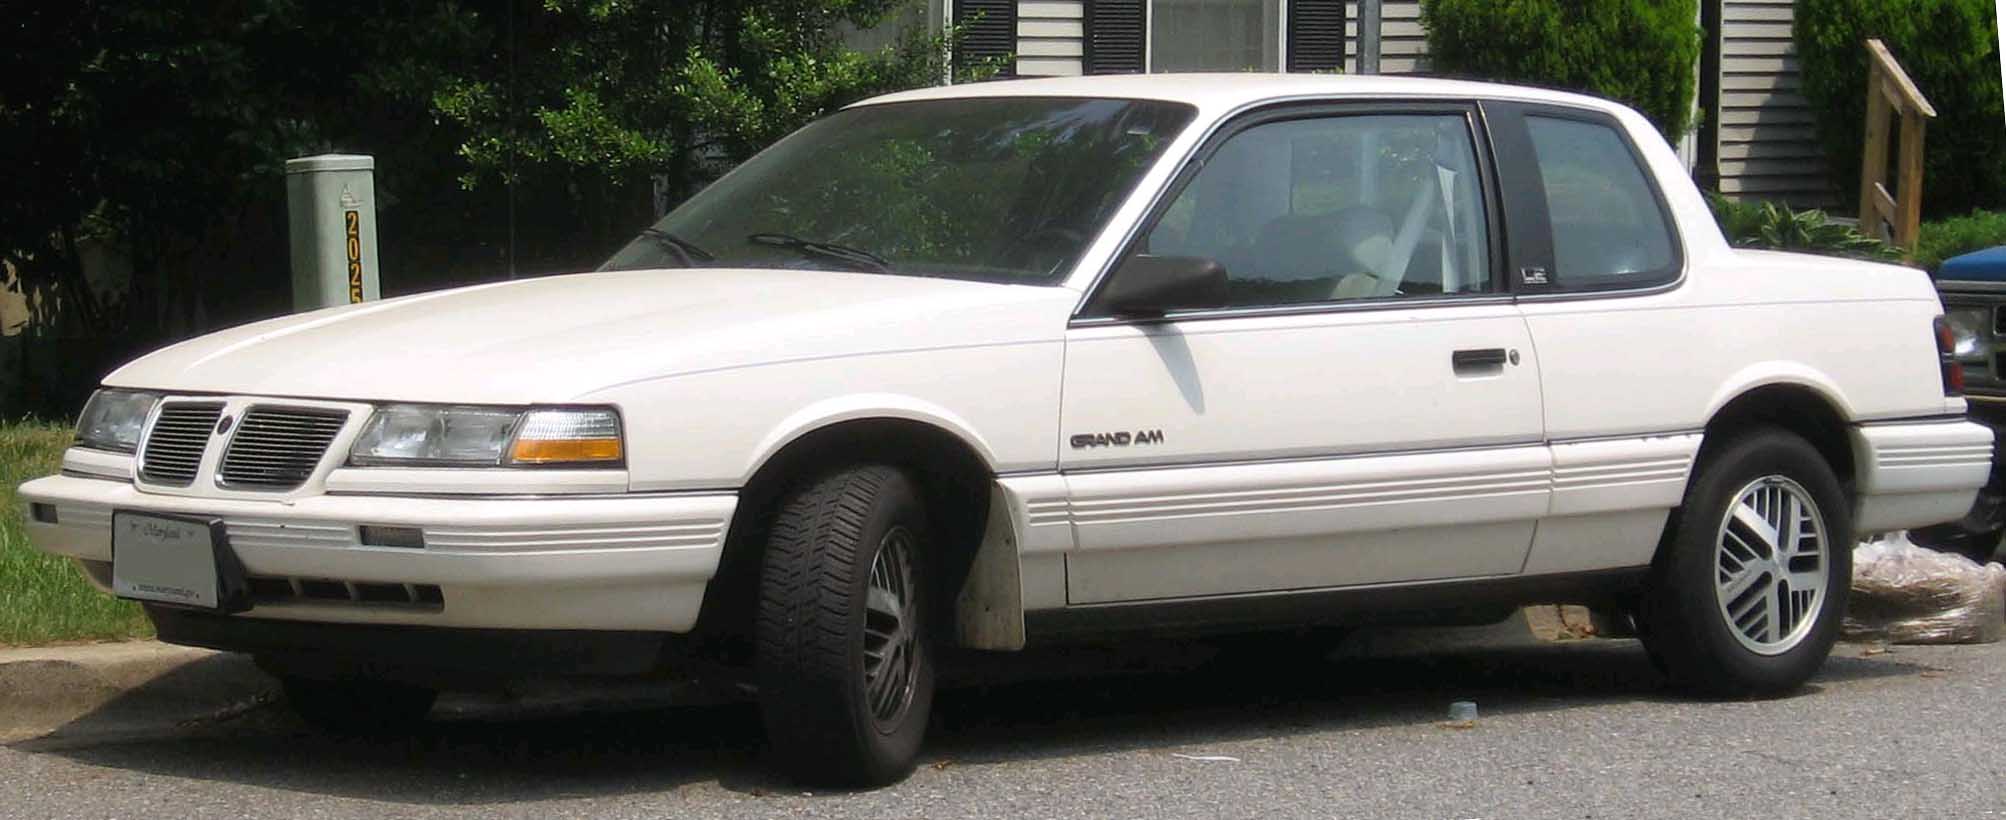 Pontiac Grand Am 1989 #6